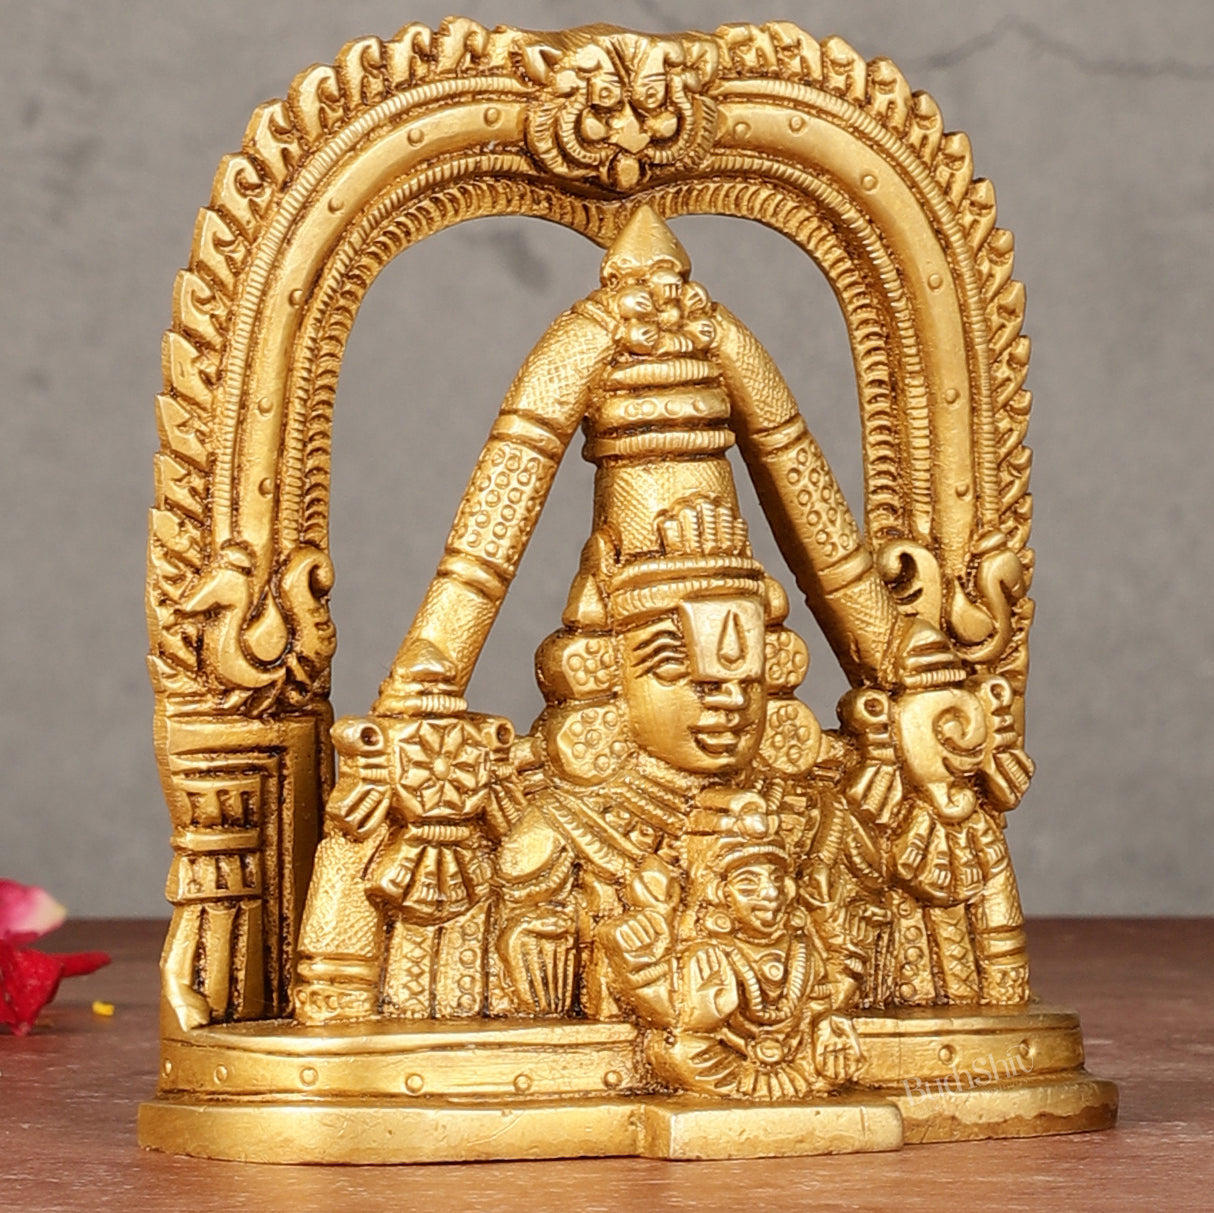 Brass Tirupati Balaji Face with Lakshmi Bust Table Accent - 4.25-inch